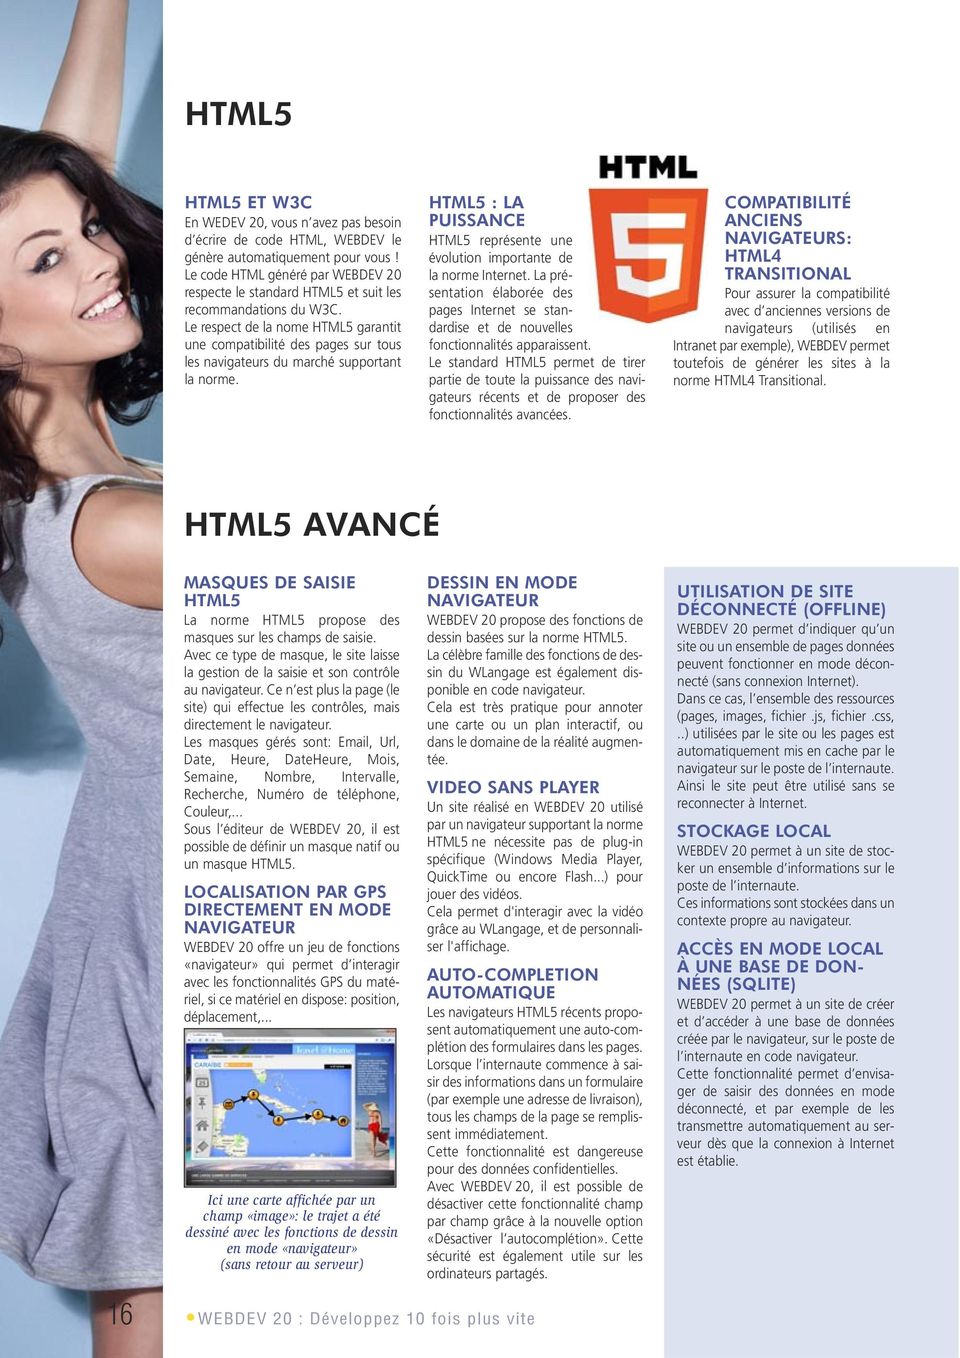 Le respect de la nome HTML5 garantit une compatibilité des pages sur tous les navigateurs du marché supportant la norme.